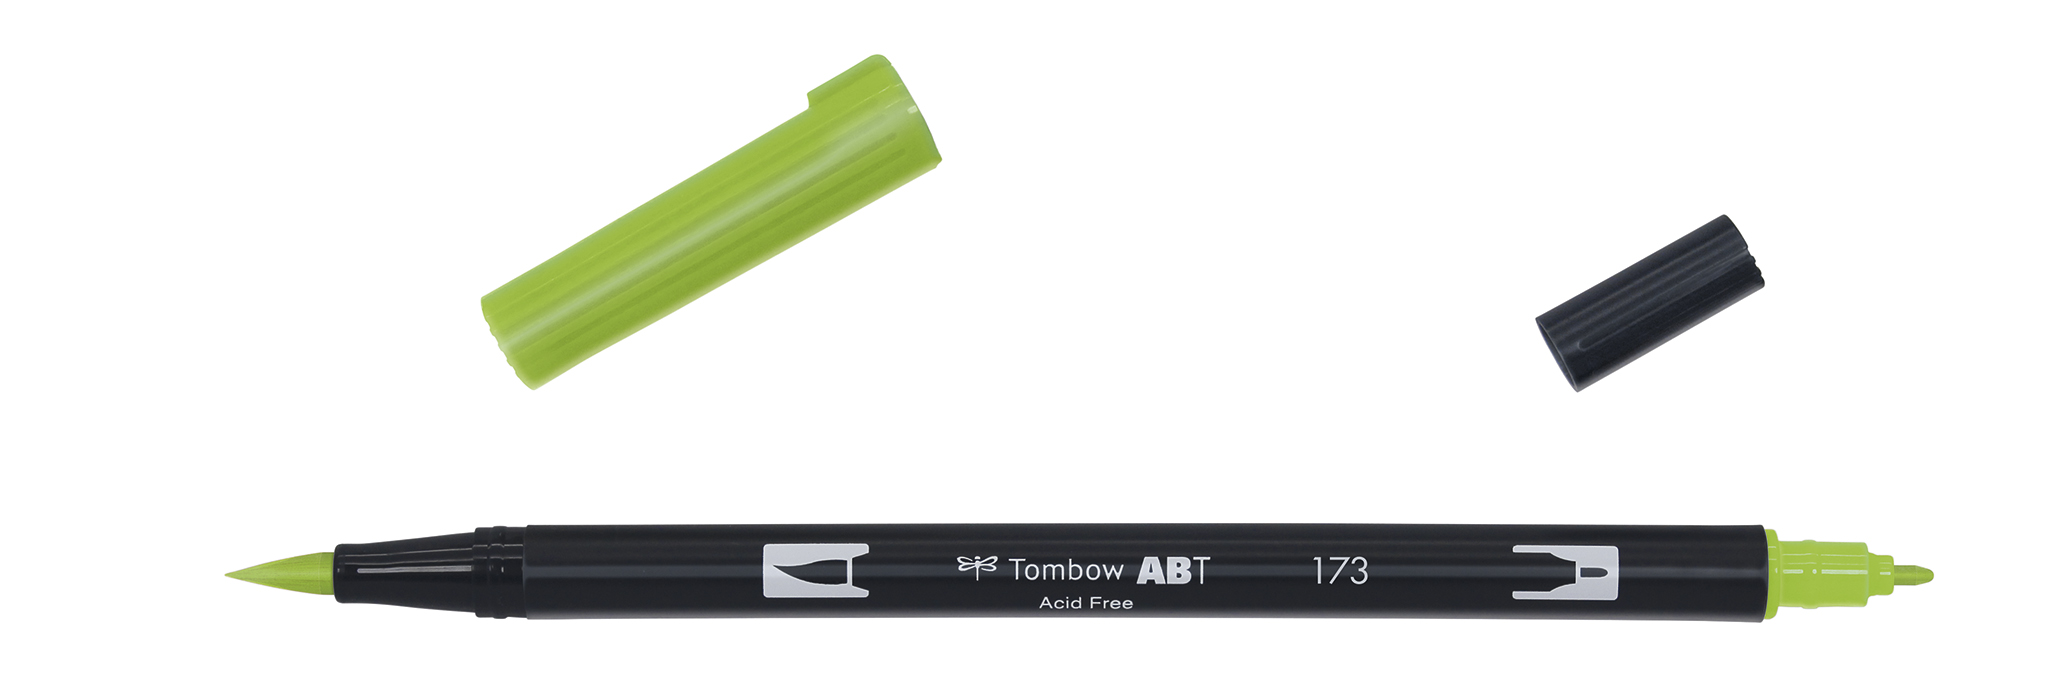 Tombow Art Brush Pen, willow green